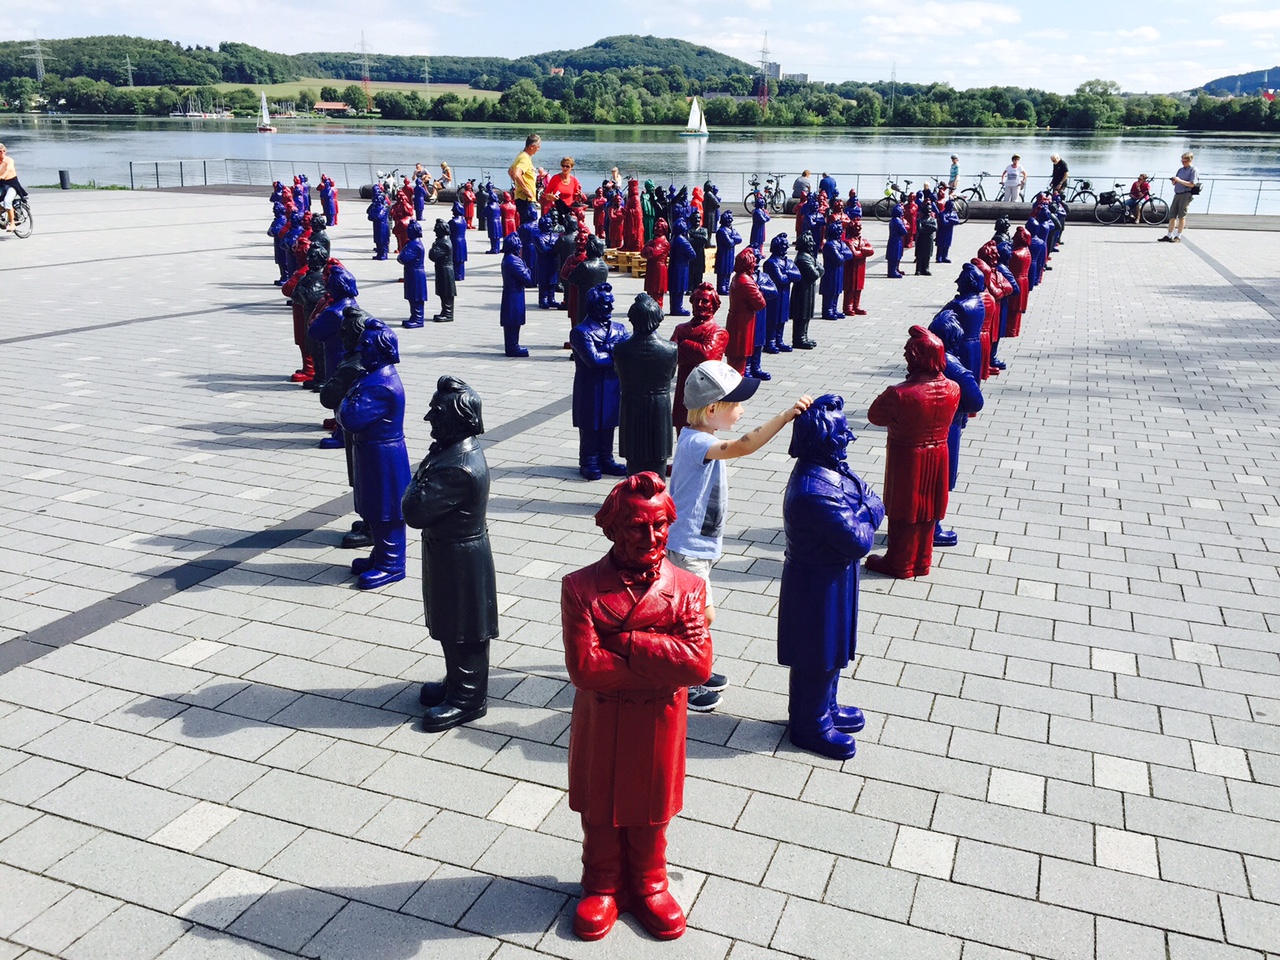 Installation mit 125 Friedrich-Harkort-Skulpturen auf dem Platz am See am 29. und 30.09.2015 in Wetter (Ruhr)